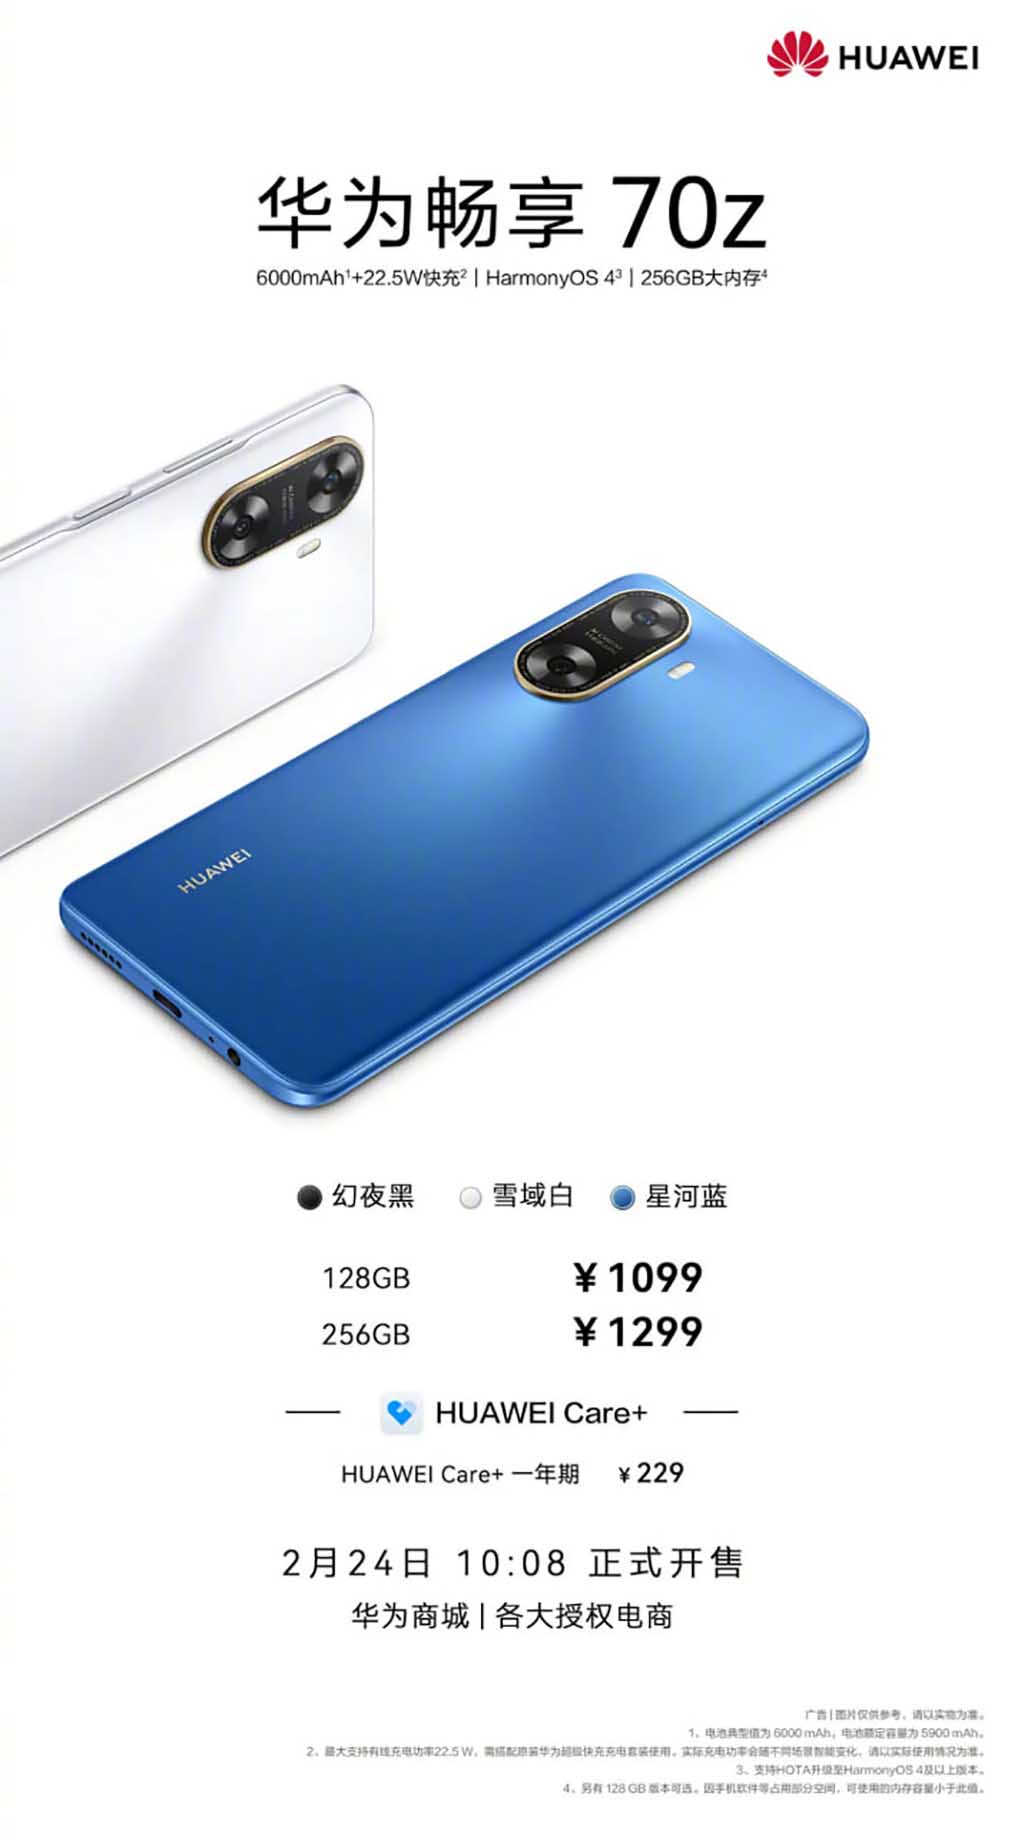 Huawei Enjoy 70z first sale